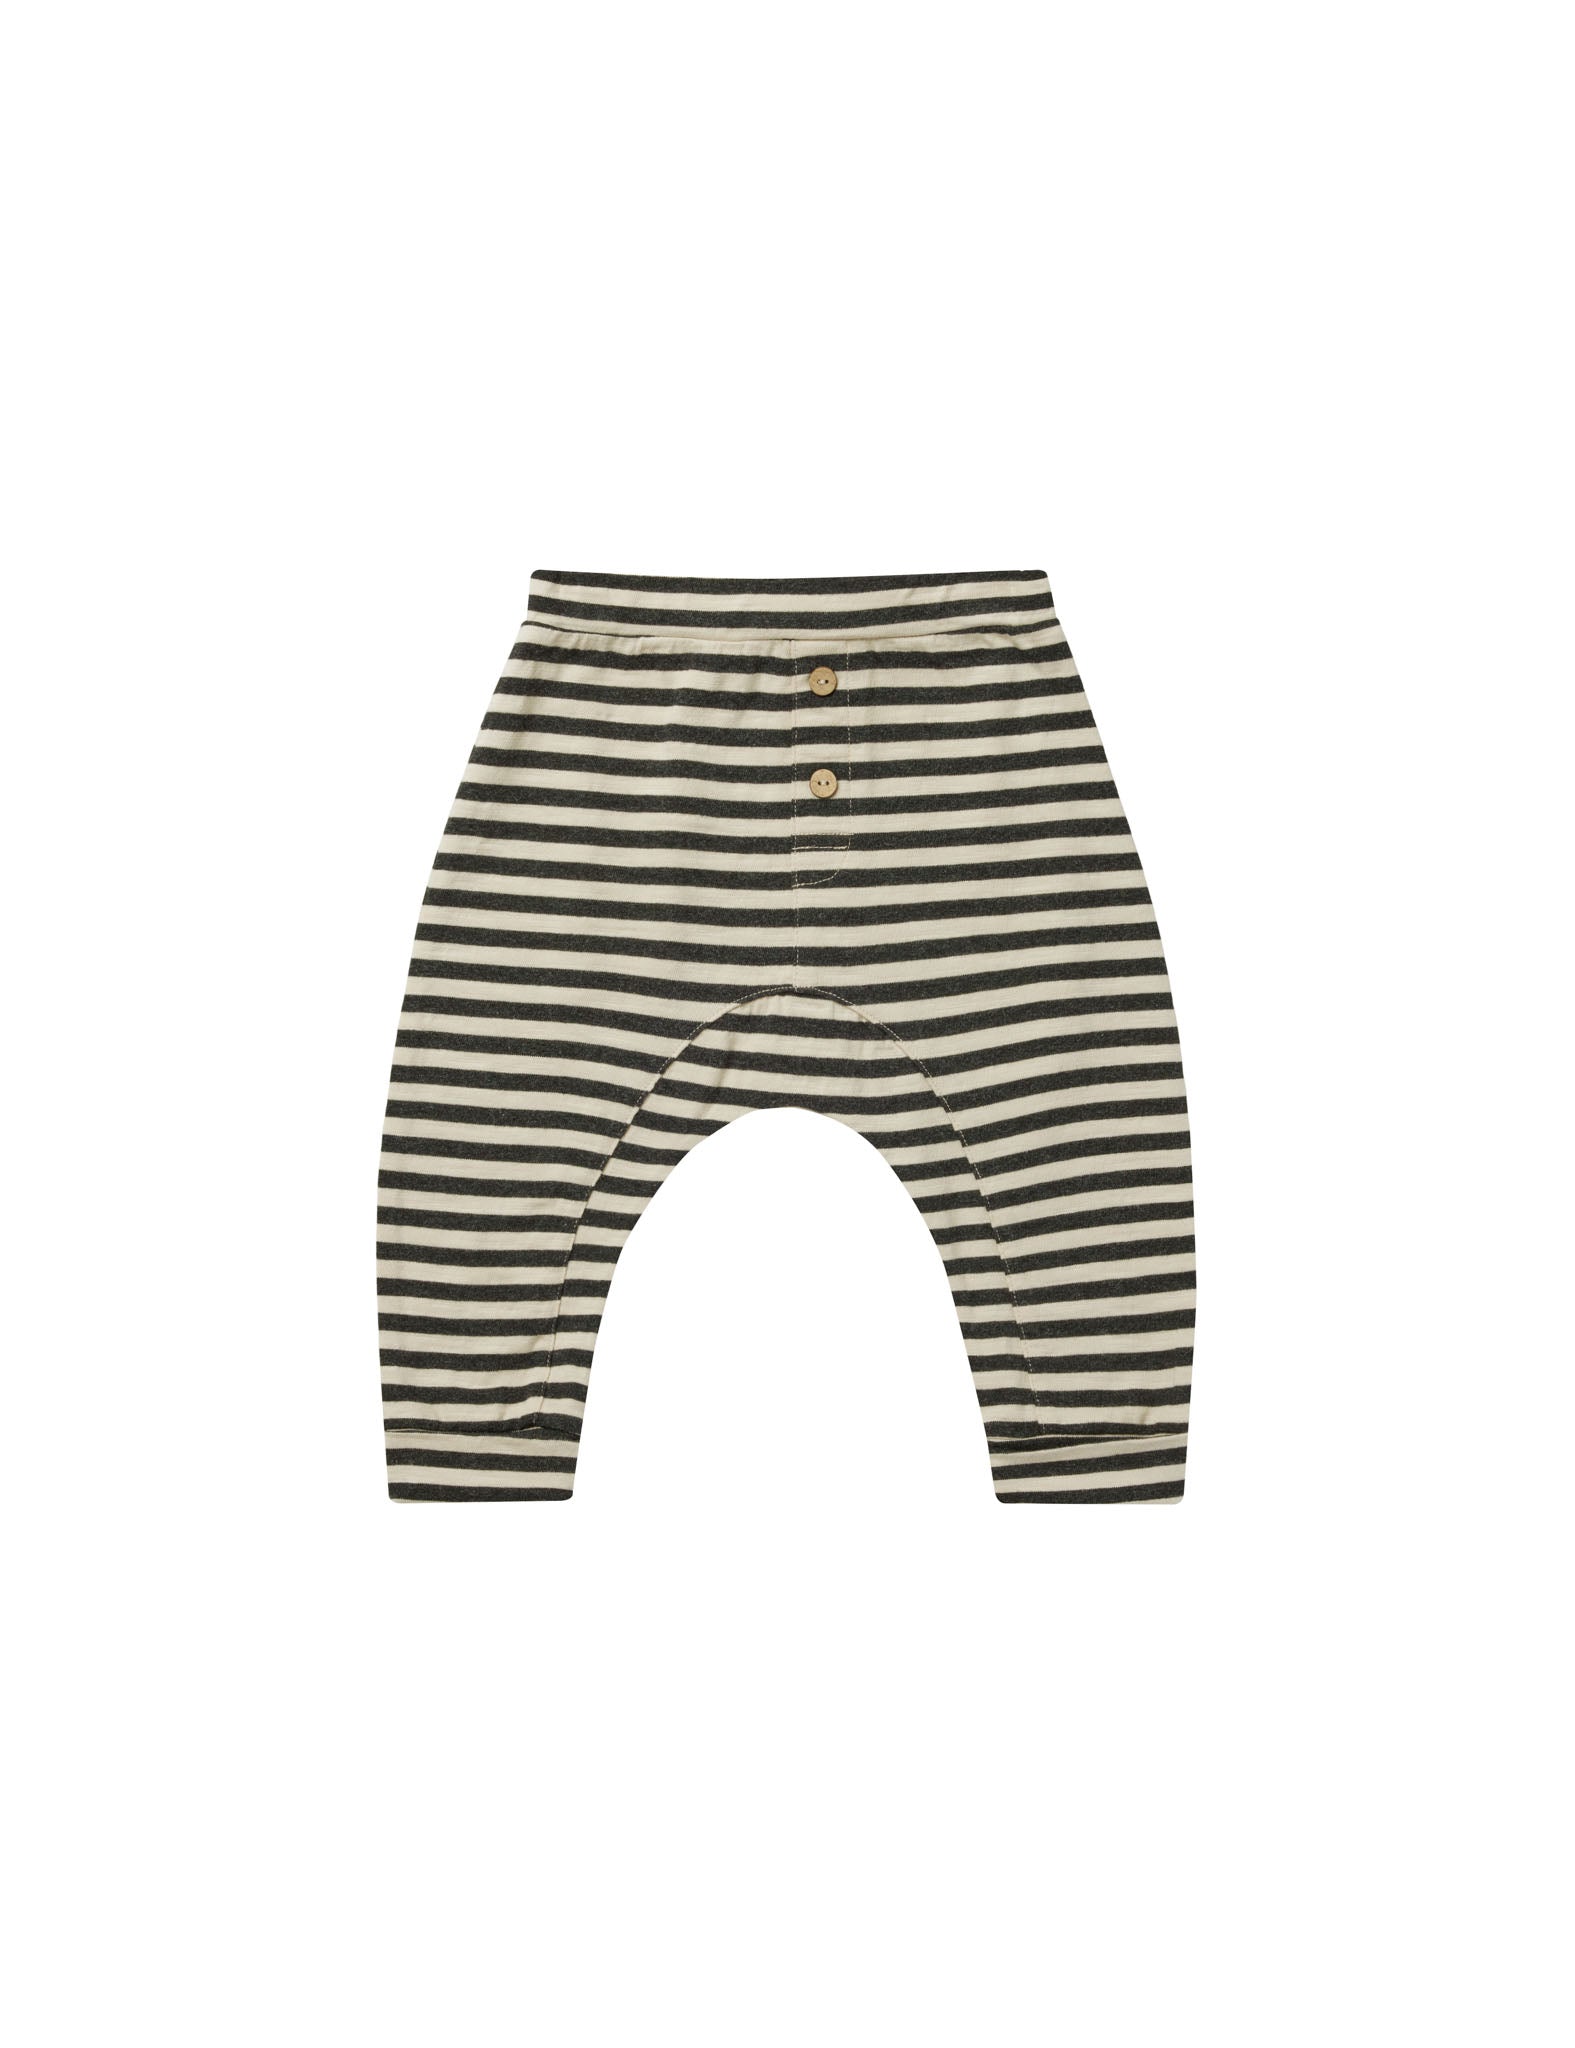 Rylee & Cru | Baby Cru Pant || Black Stripe